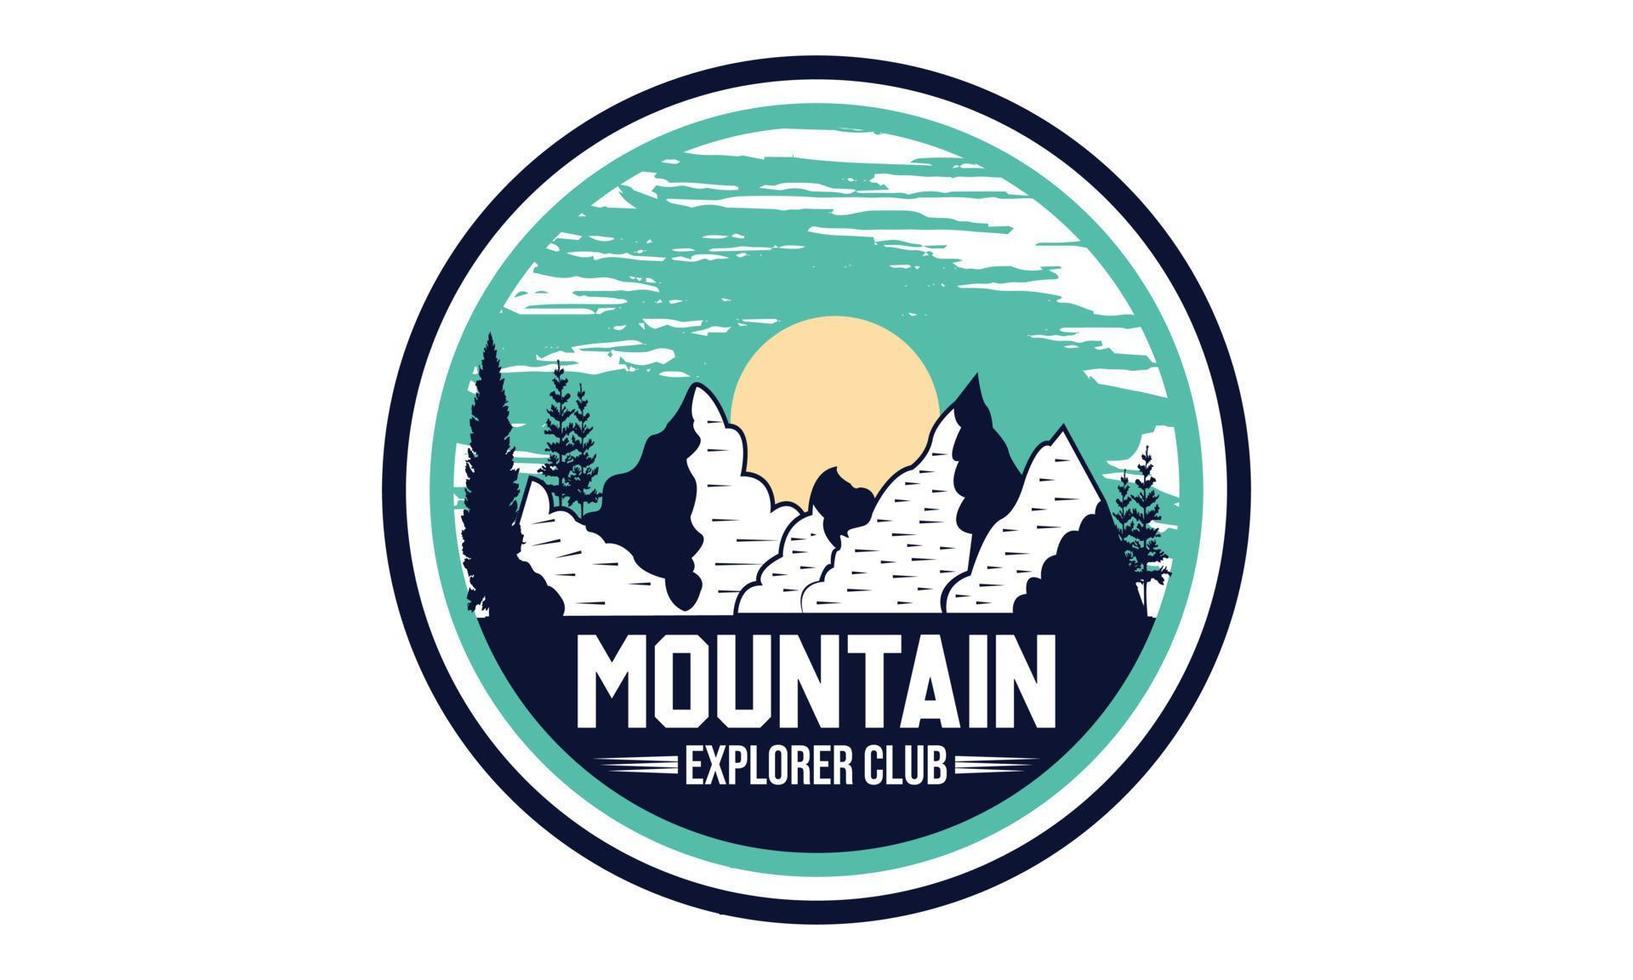 diseño de camiseta de tipografía de aventura de montaña. camiseta de tipografía de aventura de montaña motivacional para niños creativos e ilustración de vector de tema de montaña.